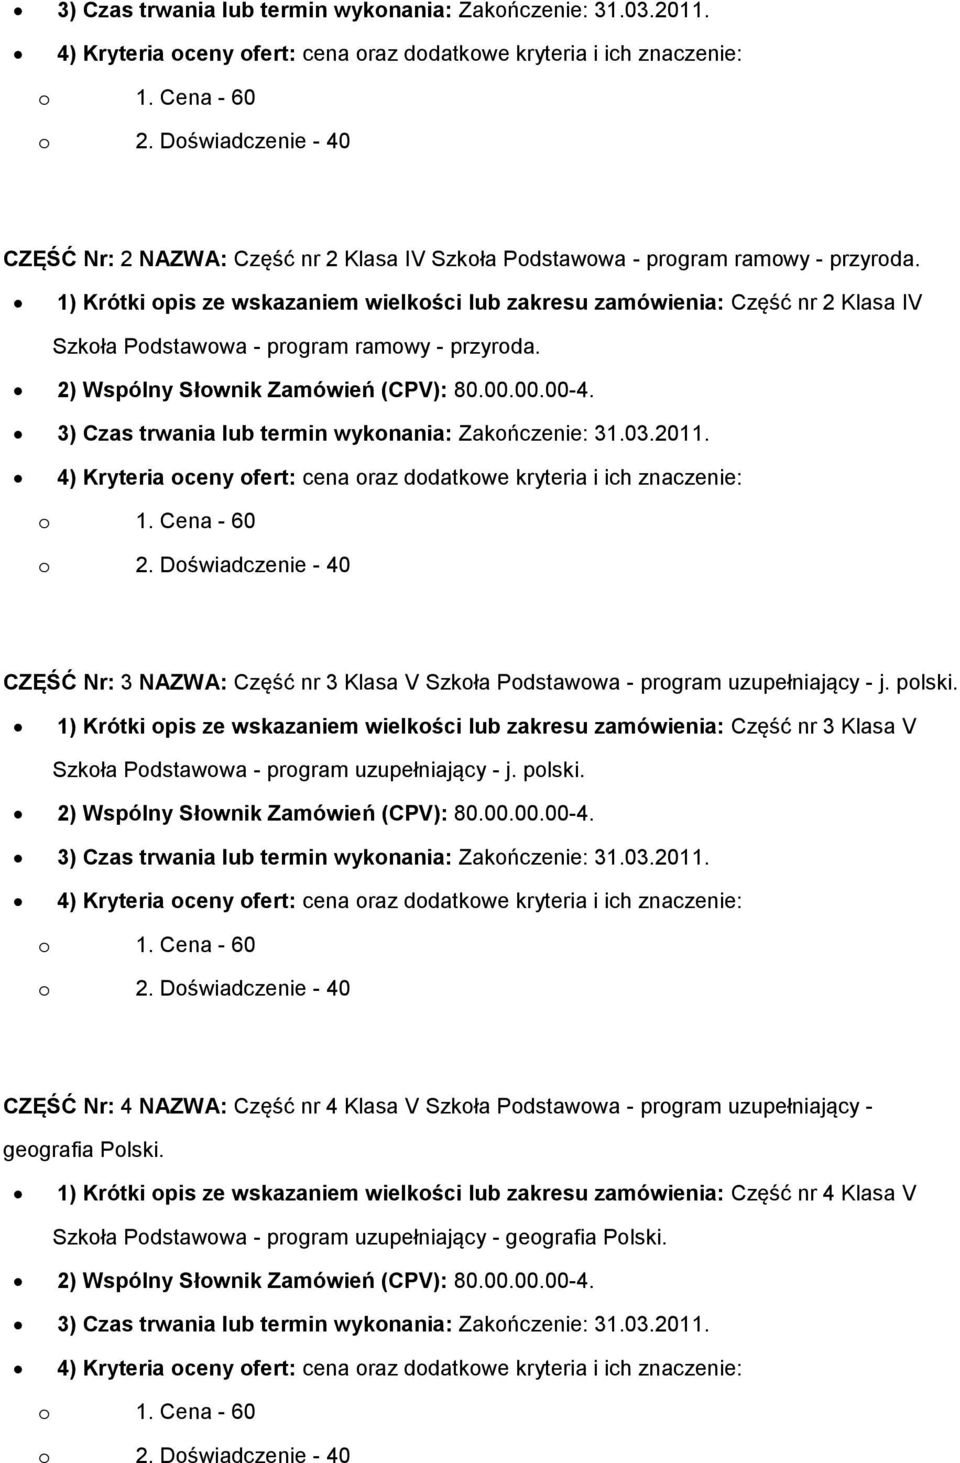 3) Czas trwania lub termin wykonania: Zakończenie: 31.03.2011. CZĘŚĆ Nr: 3 NAZWA: Część nr 3 Klasa V Szkoła Podstawowa - program uzupełniający - j. polski.